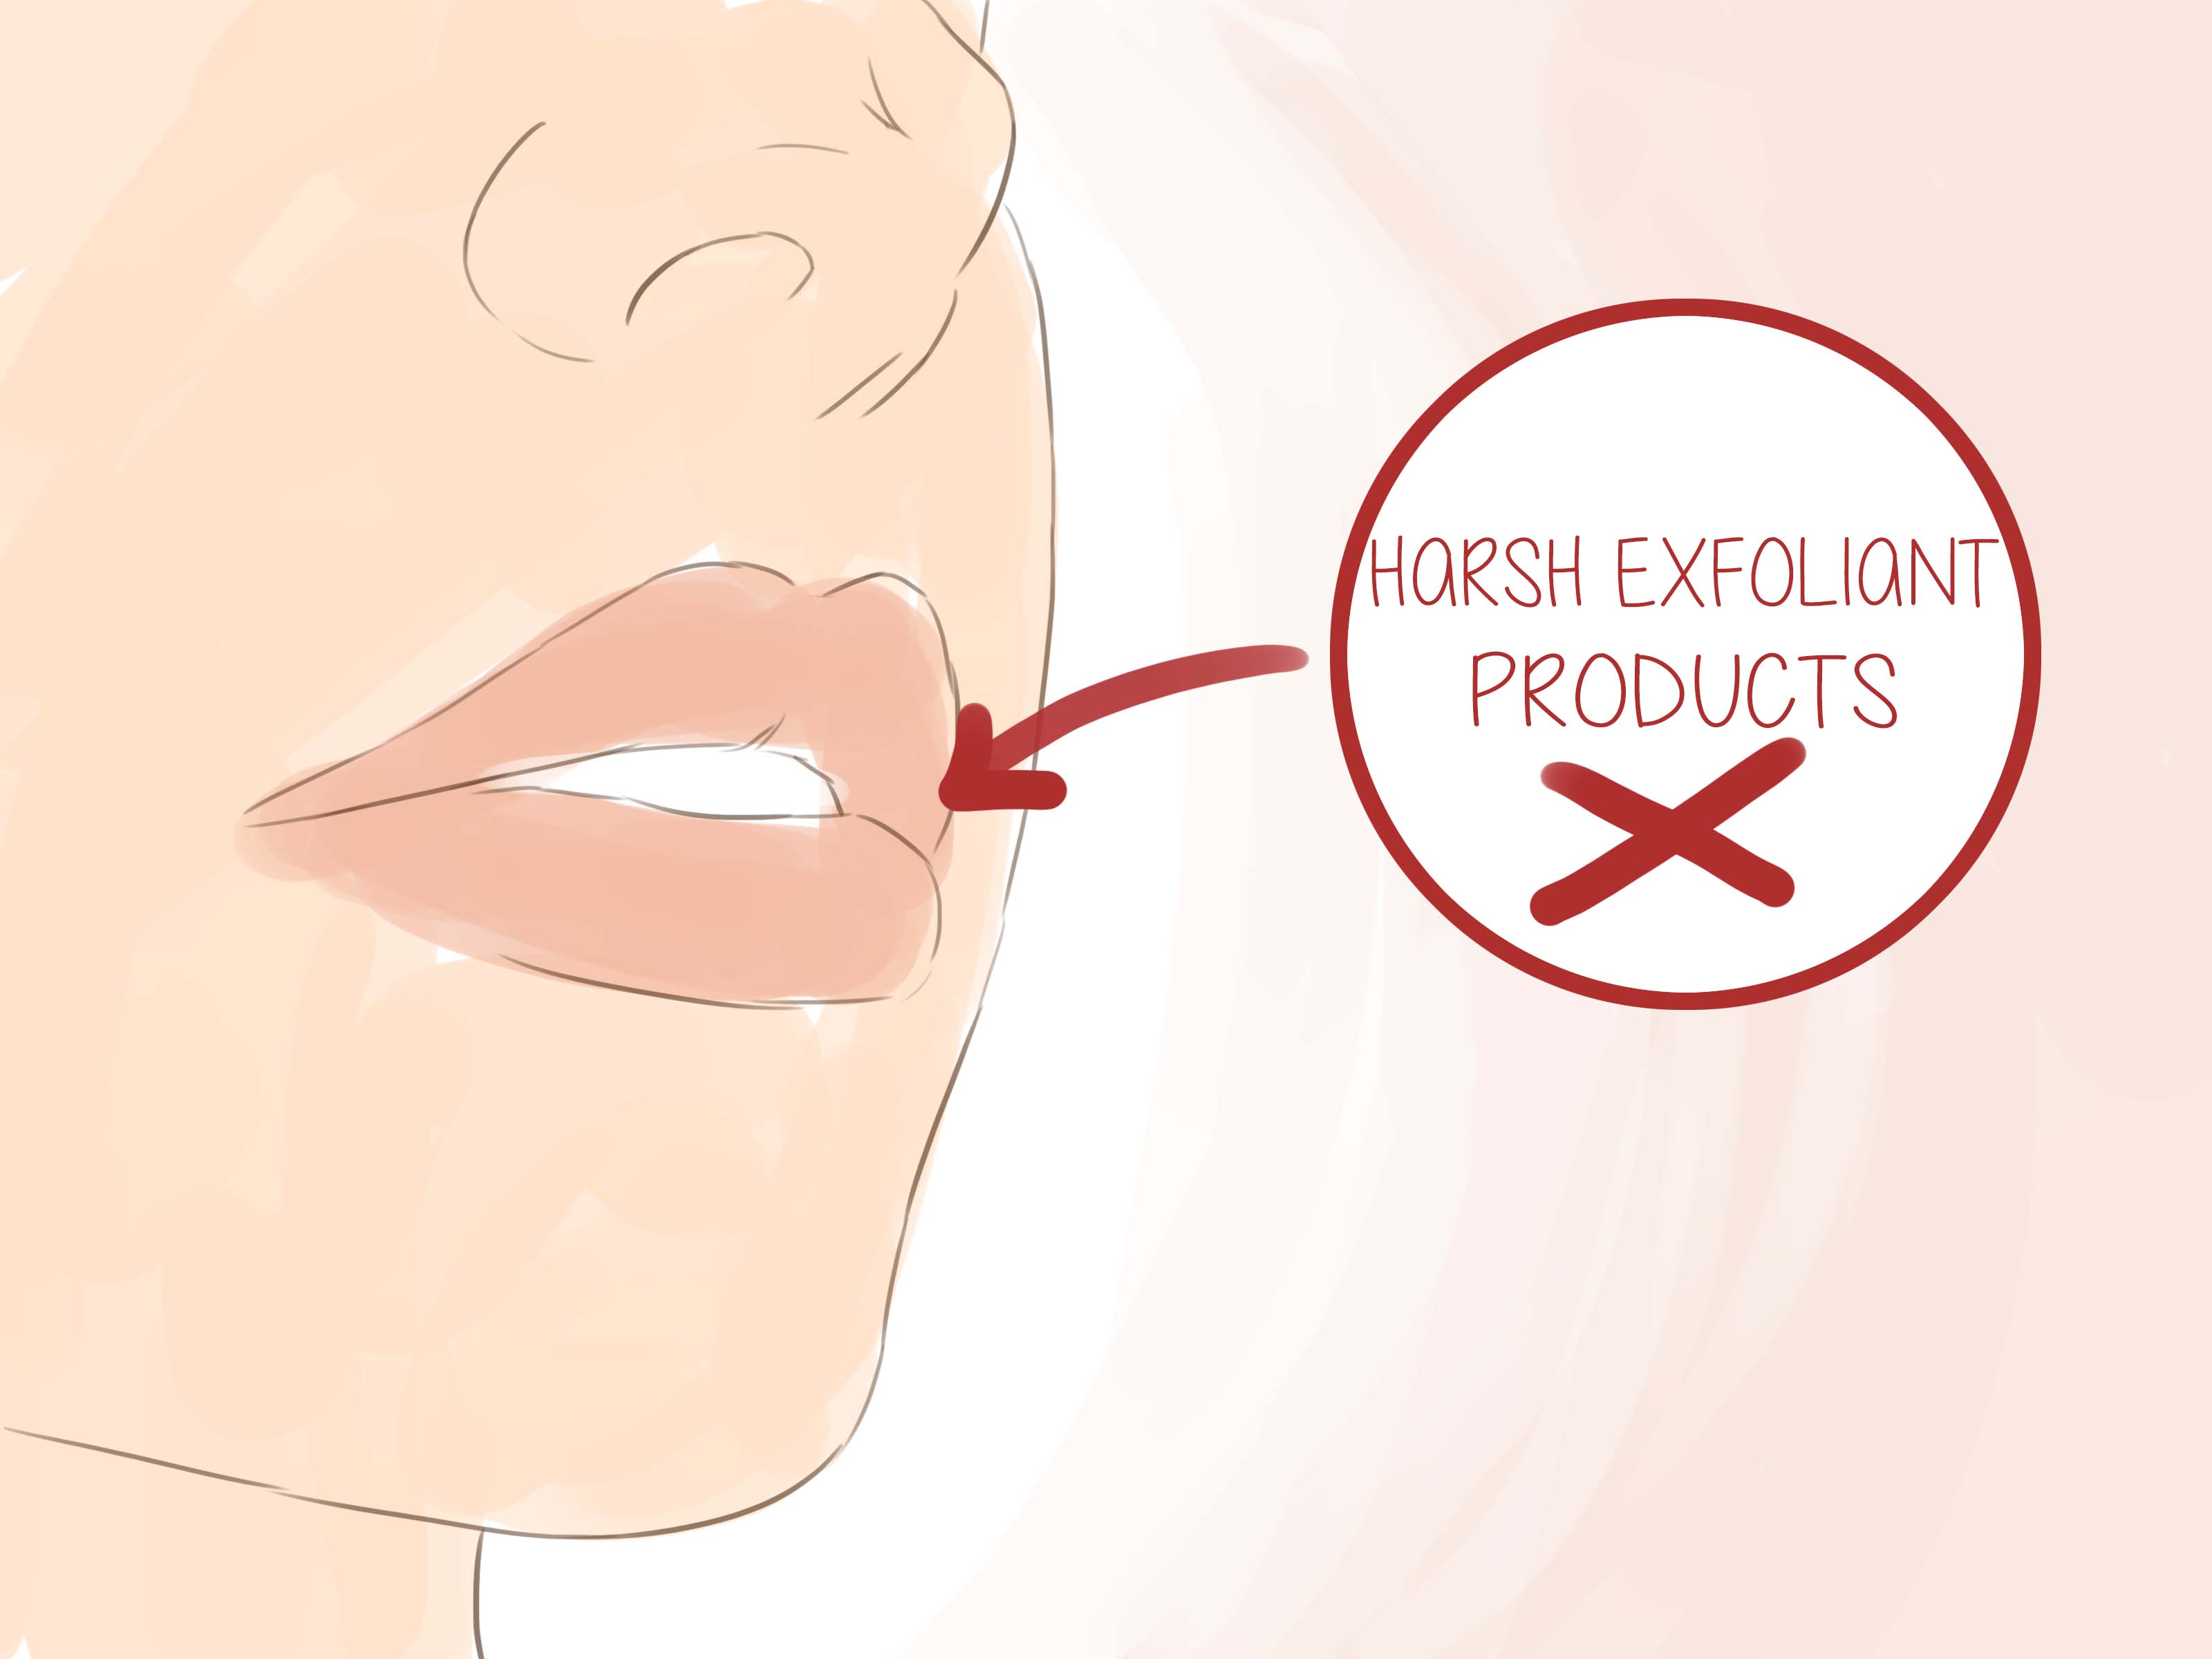 3 Ways to Heal Peeling Lips - wikiHow